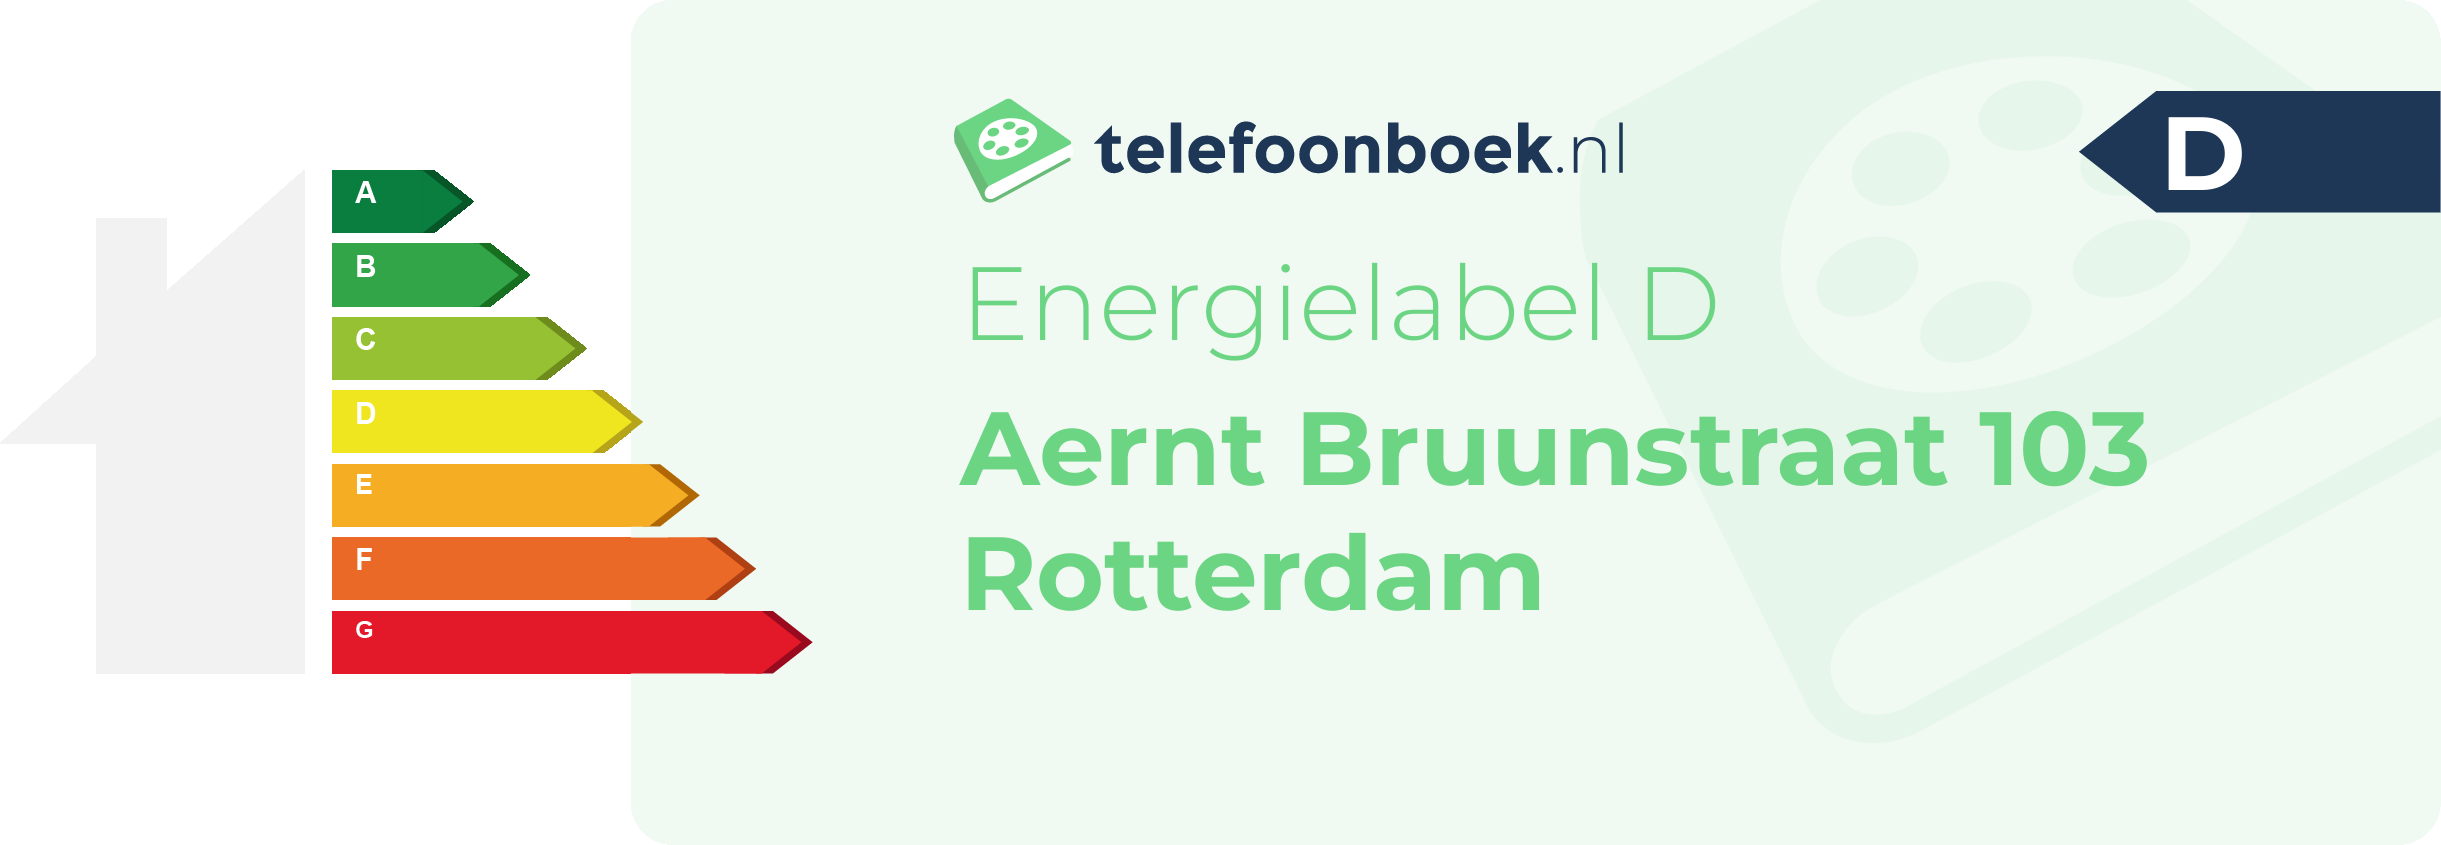 Energielabel Aernt Bruunstraat 103 Rotterdam